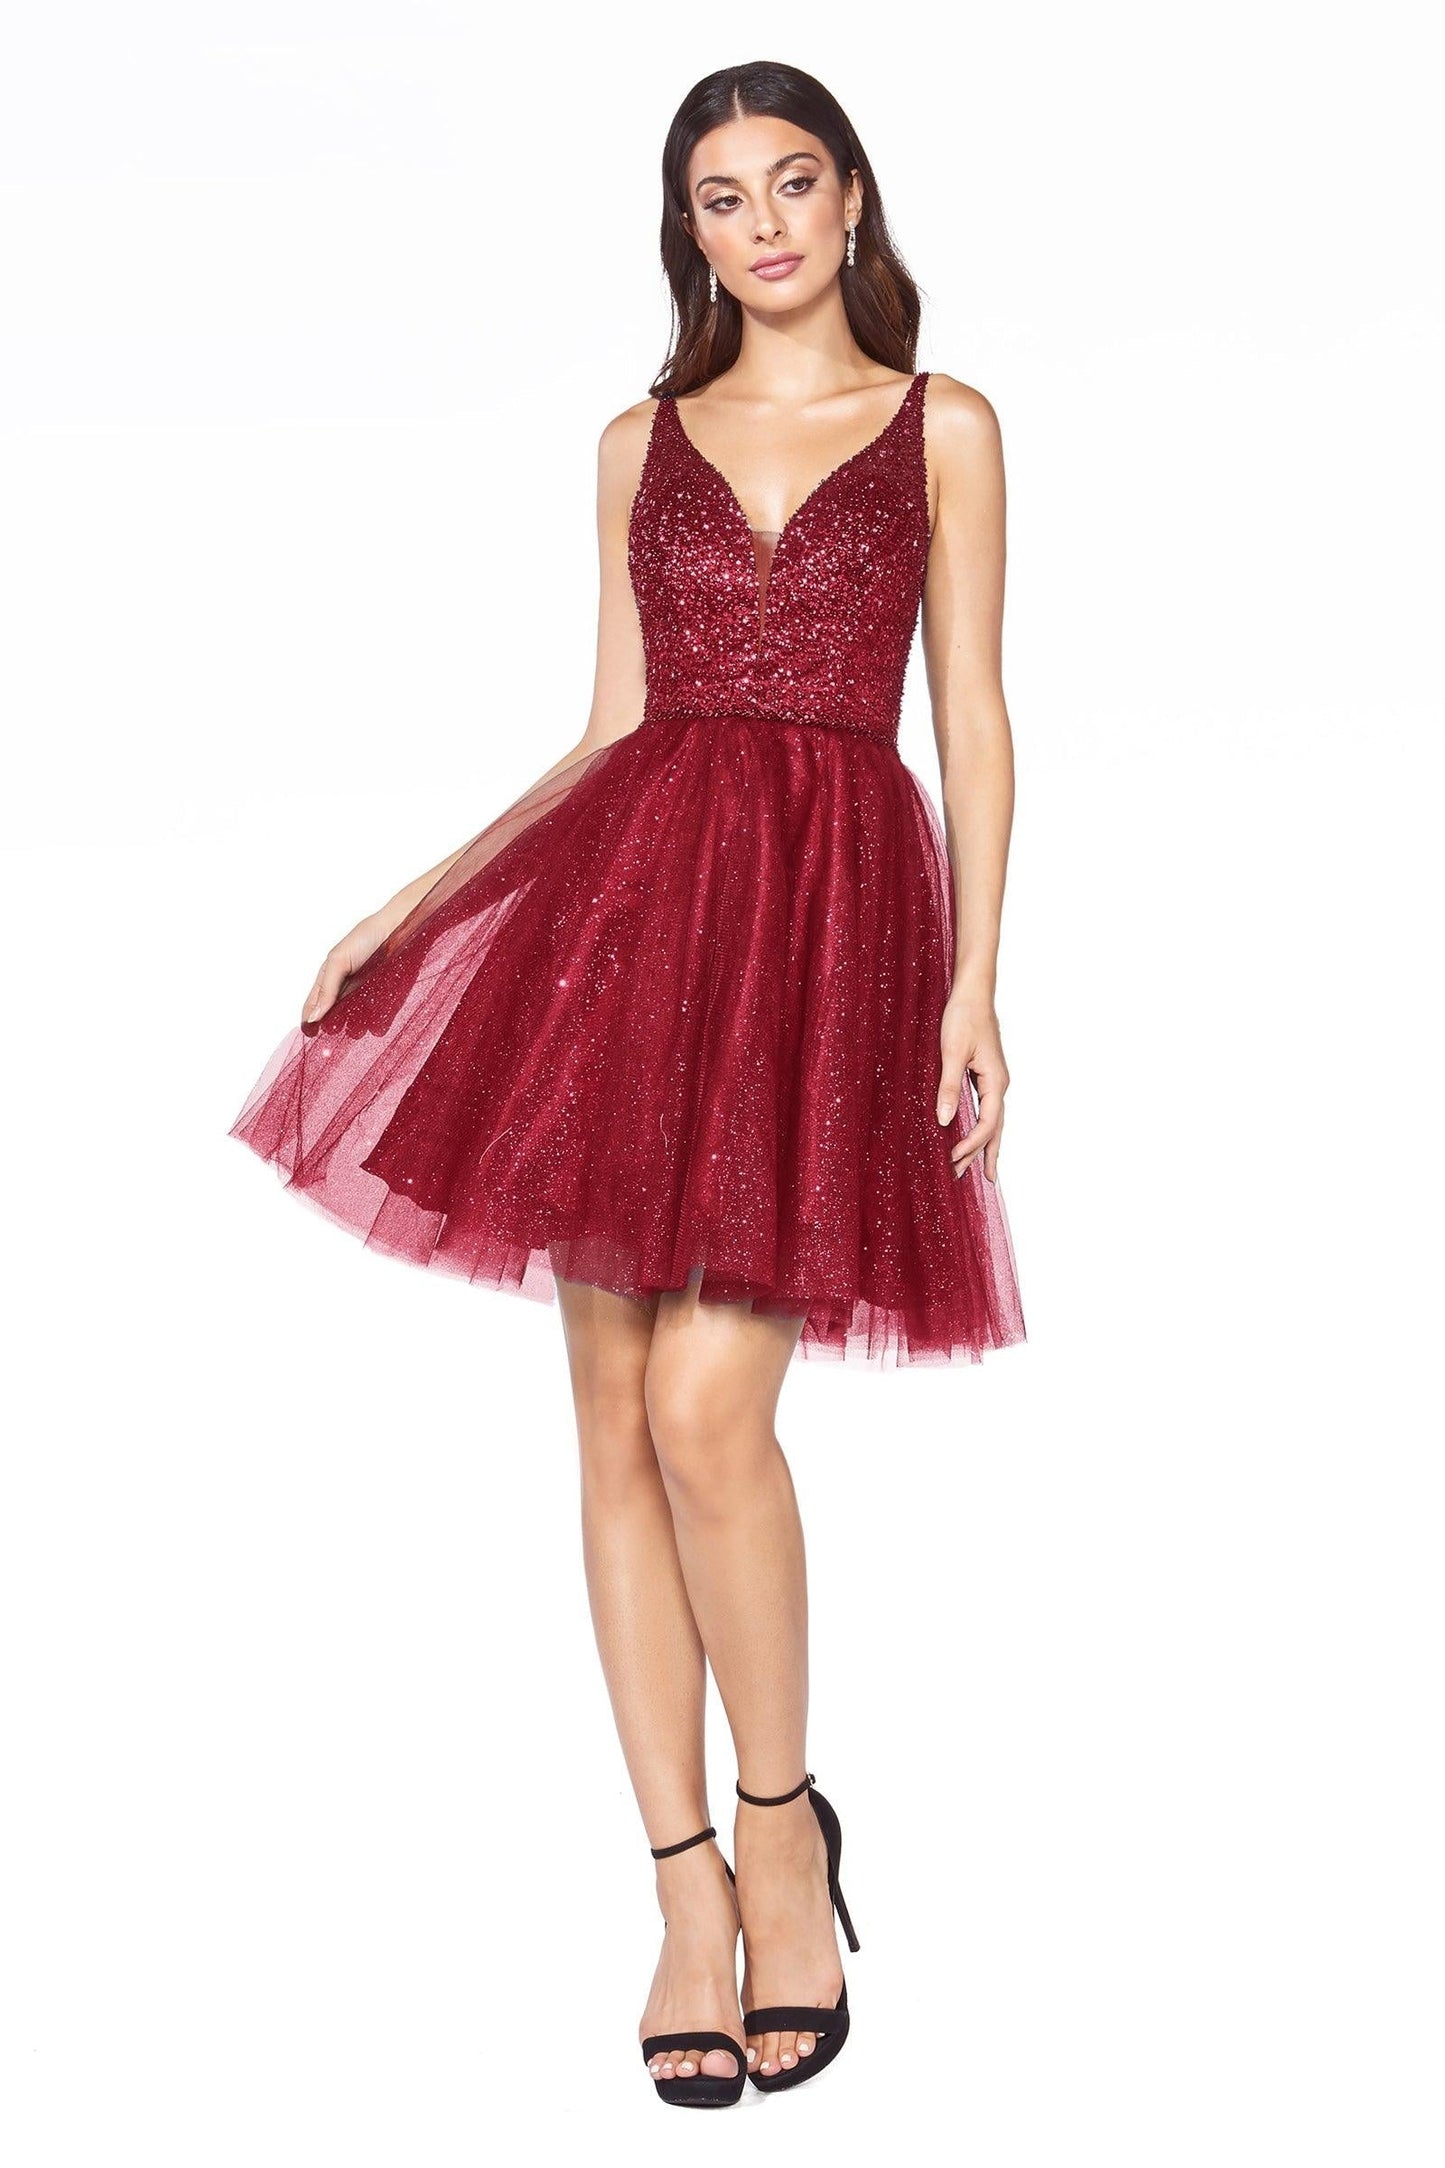 Homecoming Short Sleeveless Glitter Skirt Prom Dress - The Dress Outlet